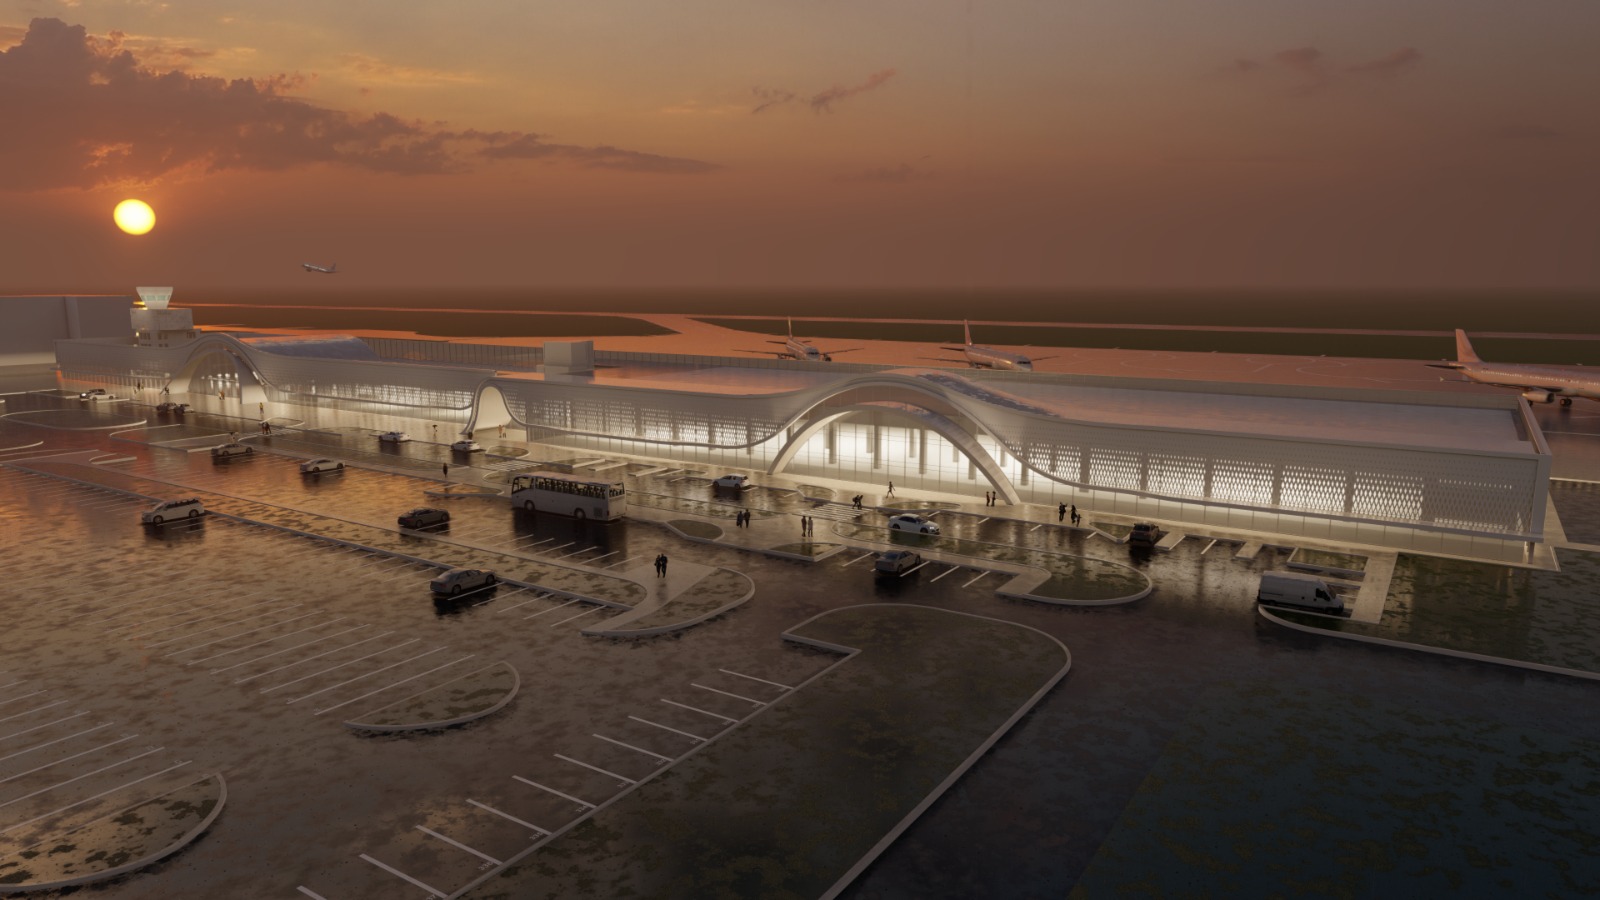 Proiect: Aeroportul Internațional Mihail Kogălniceanu Constanța va fi modernizat cu o investiție de 46 milioane euro, din fonduri europene.